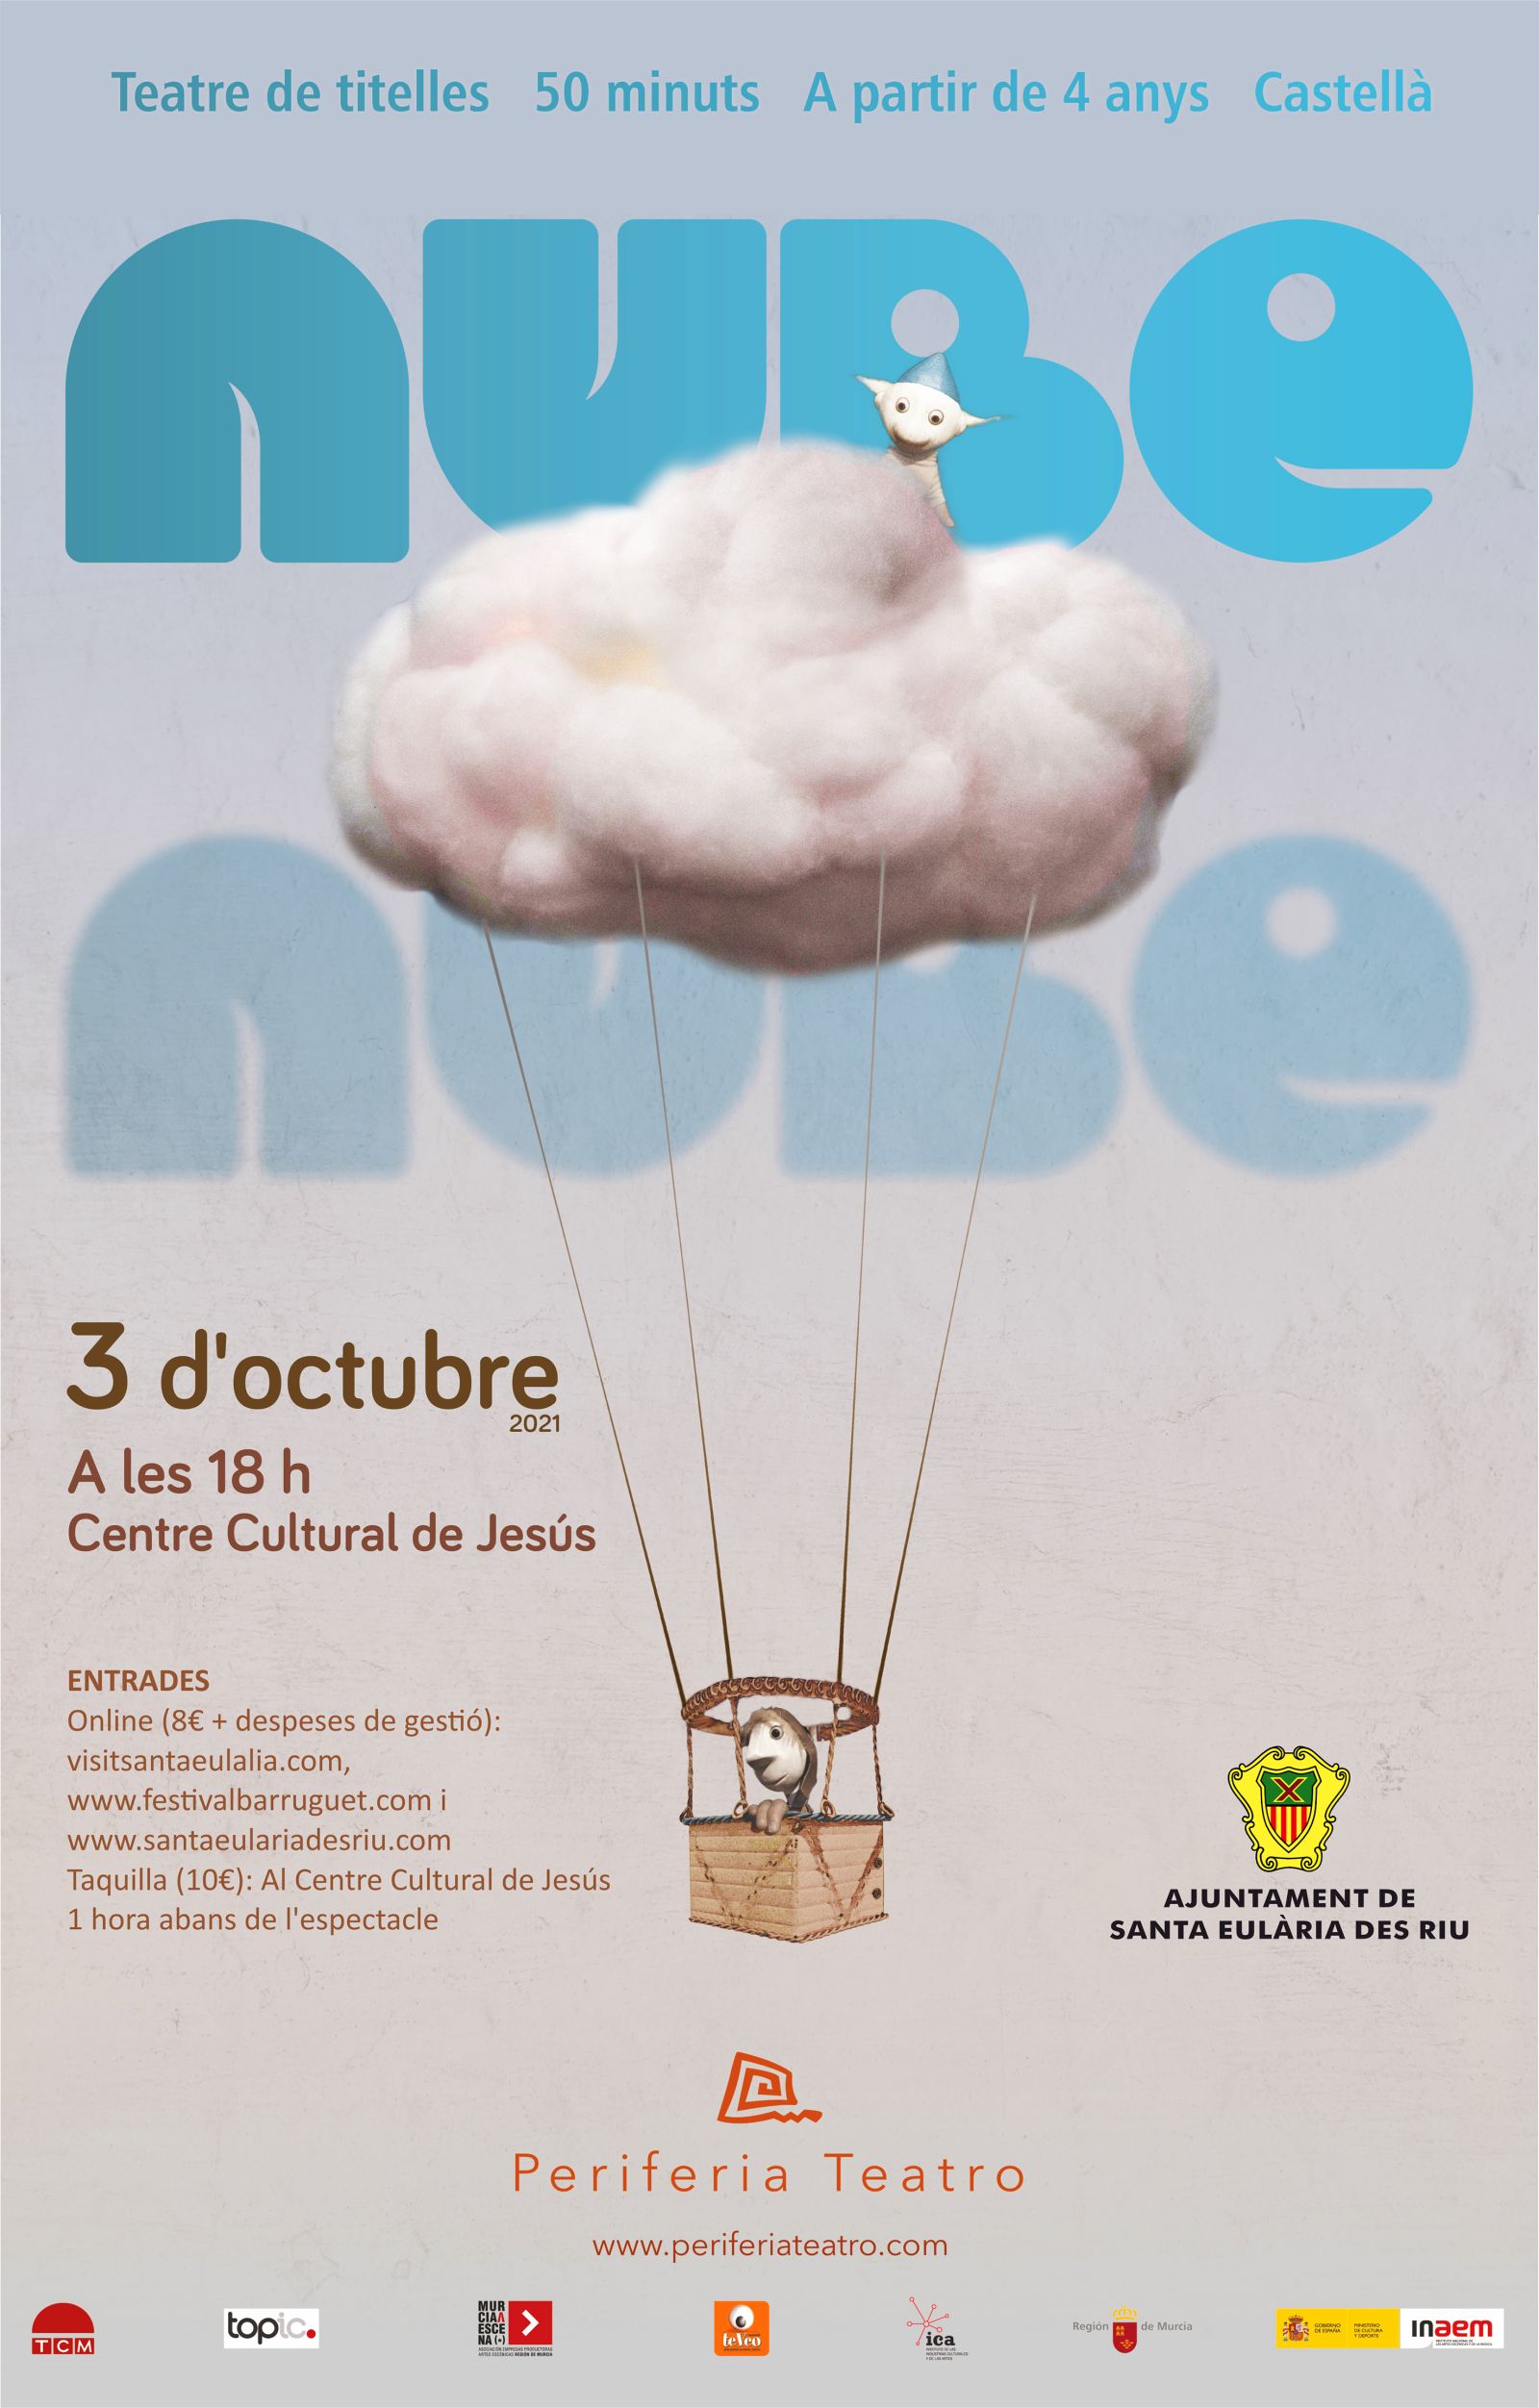 Llega a las Pitiusas 'Nube Nube' un espectáculo de títeres dirigido al público familiar que trata sobre el amor